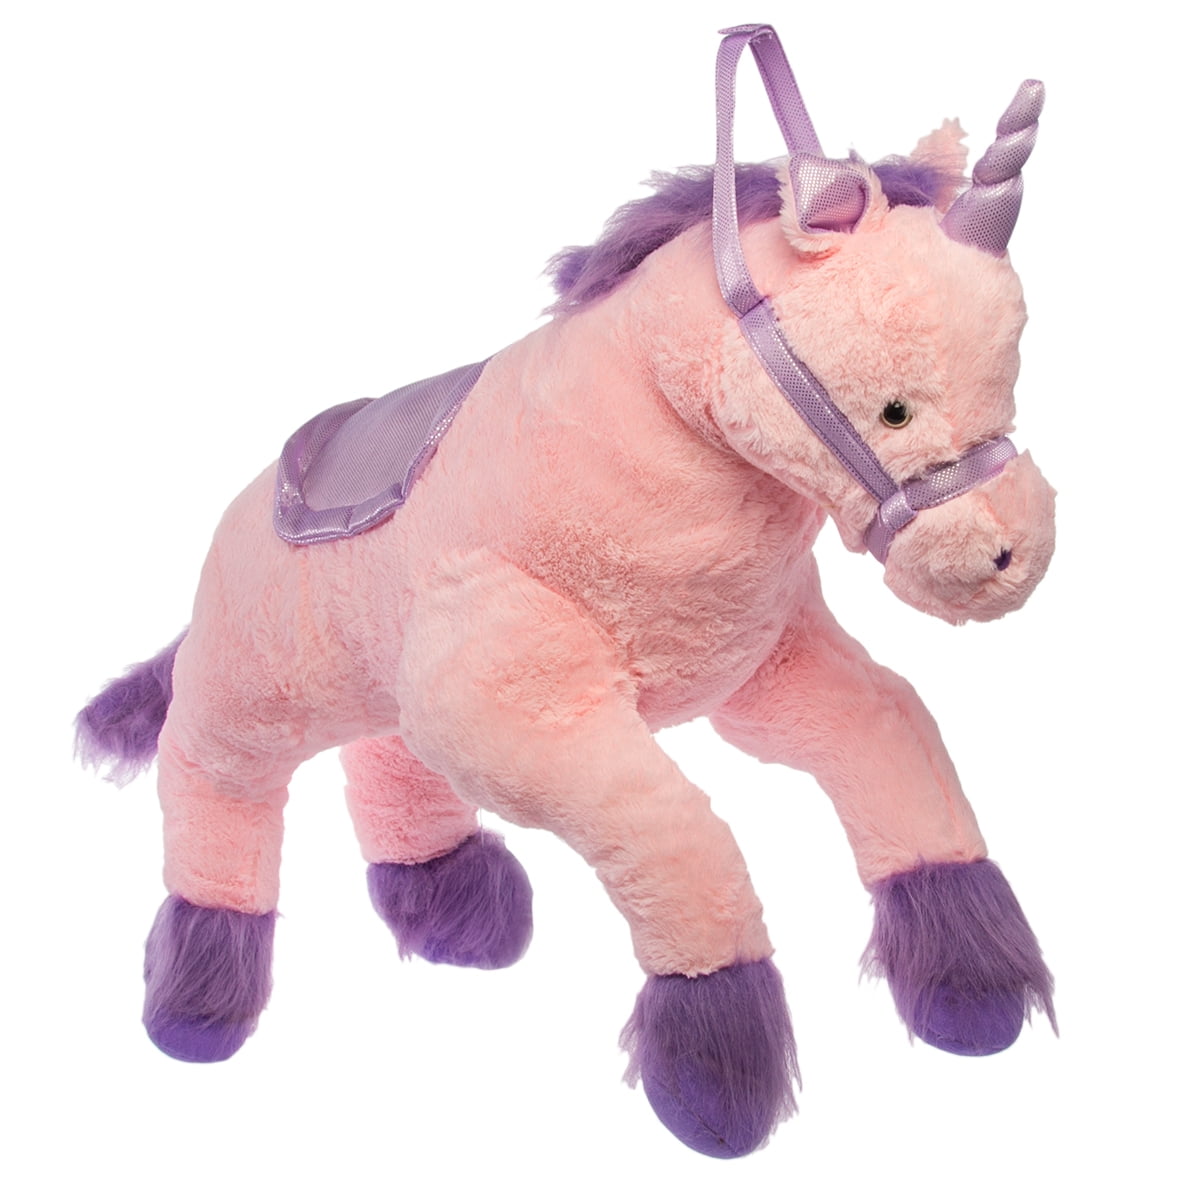 jumbo unicorn stuffed animal walmart